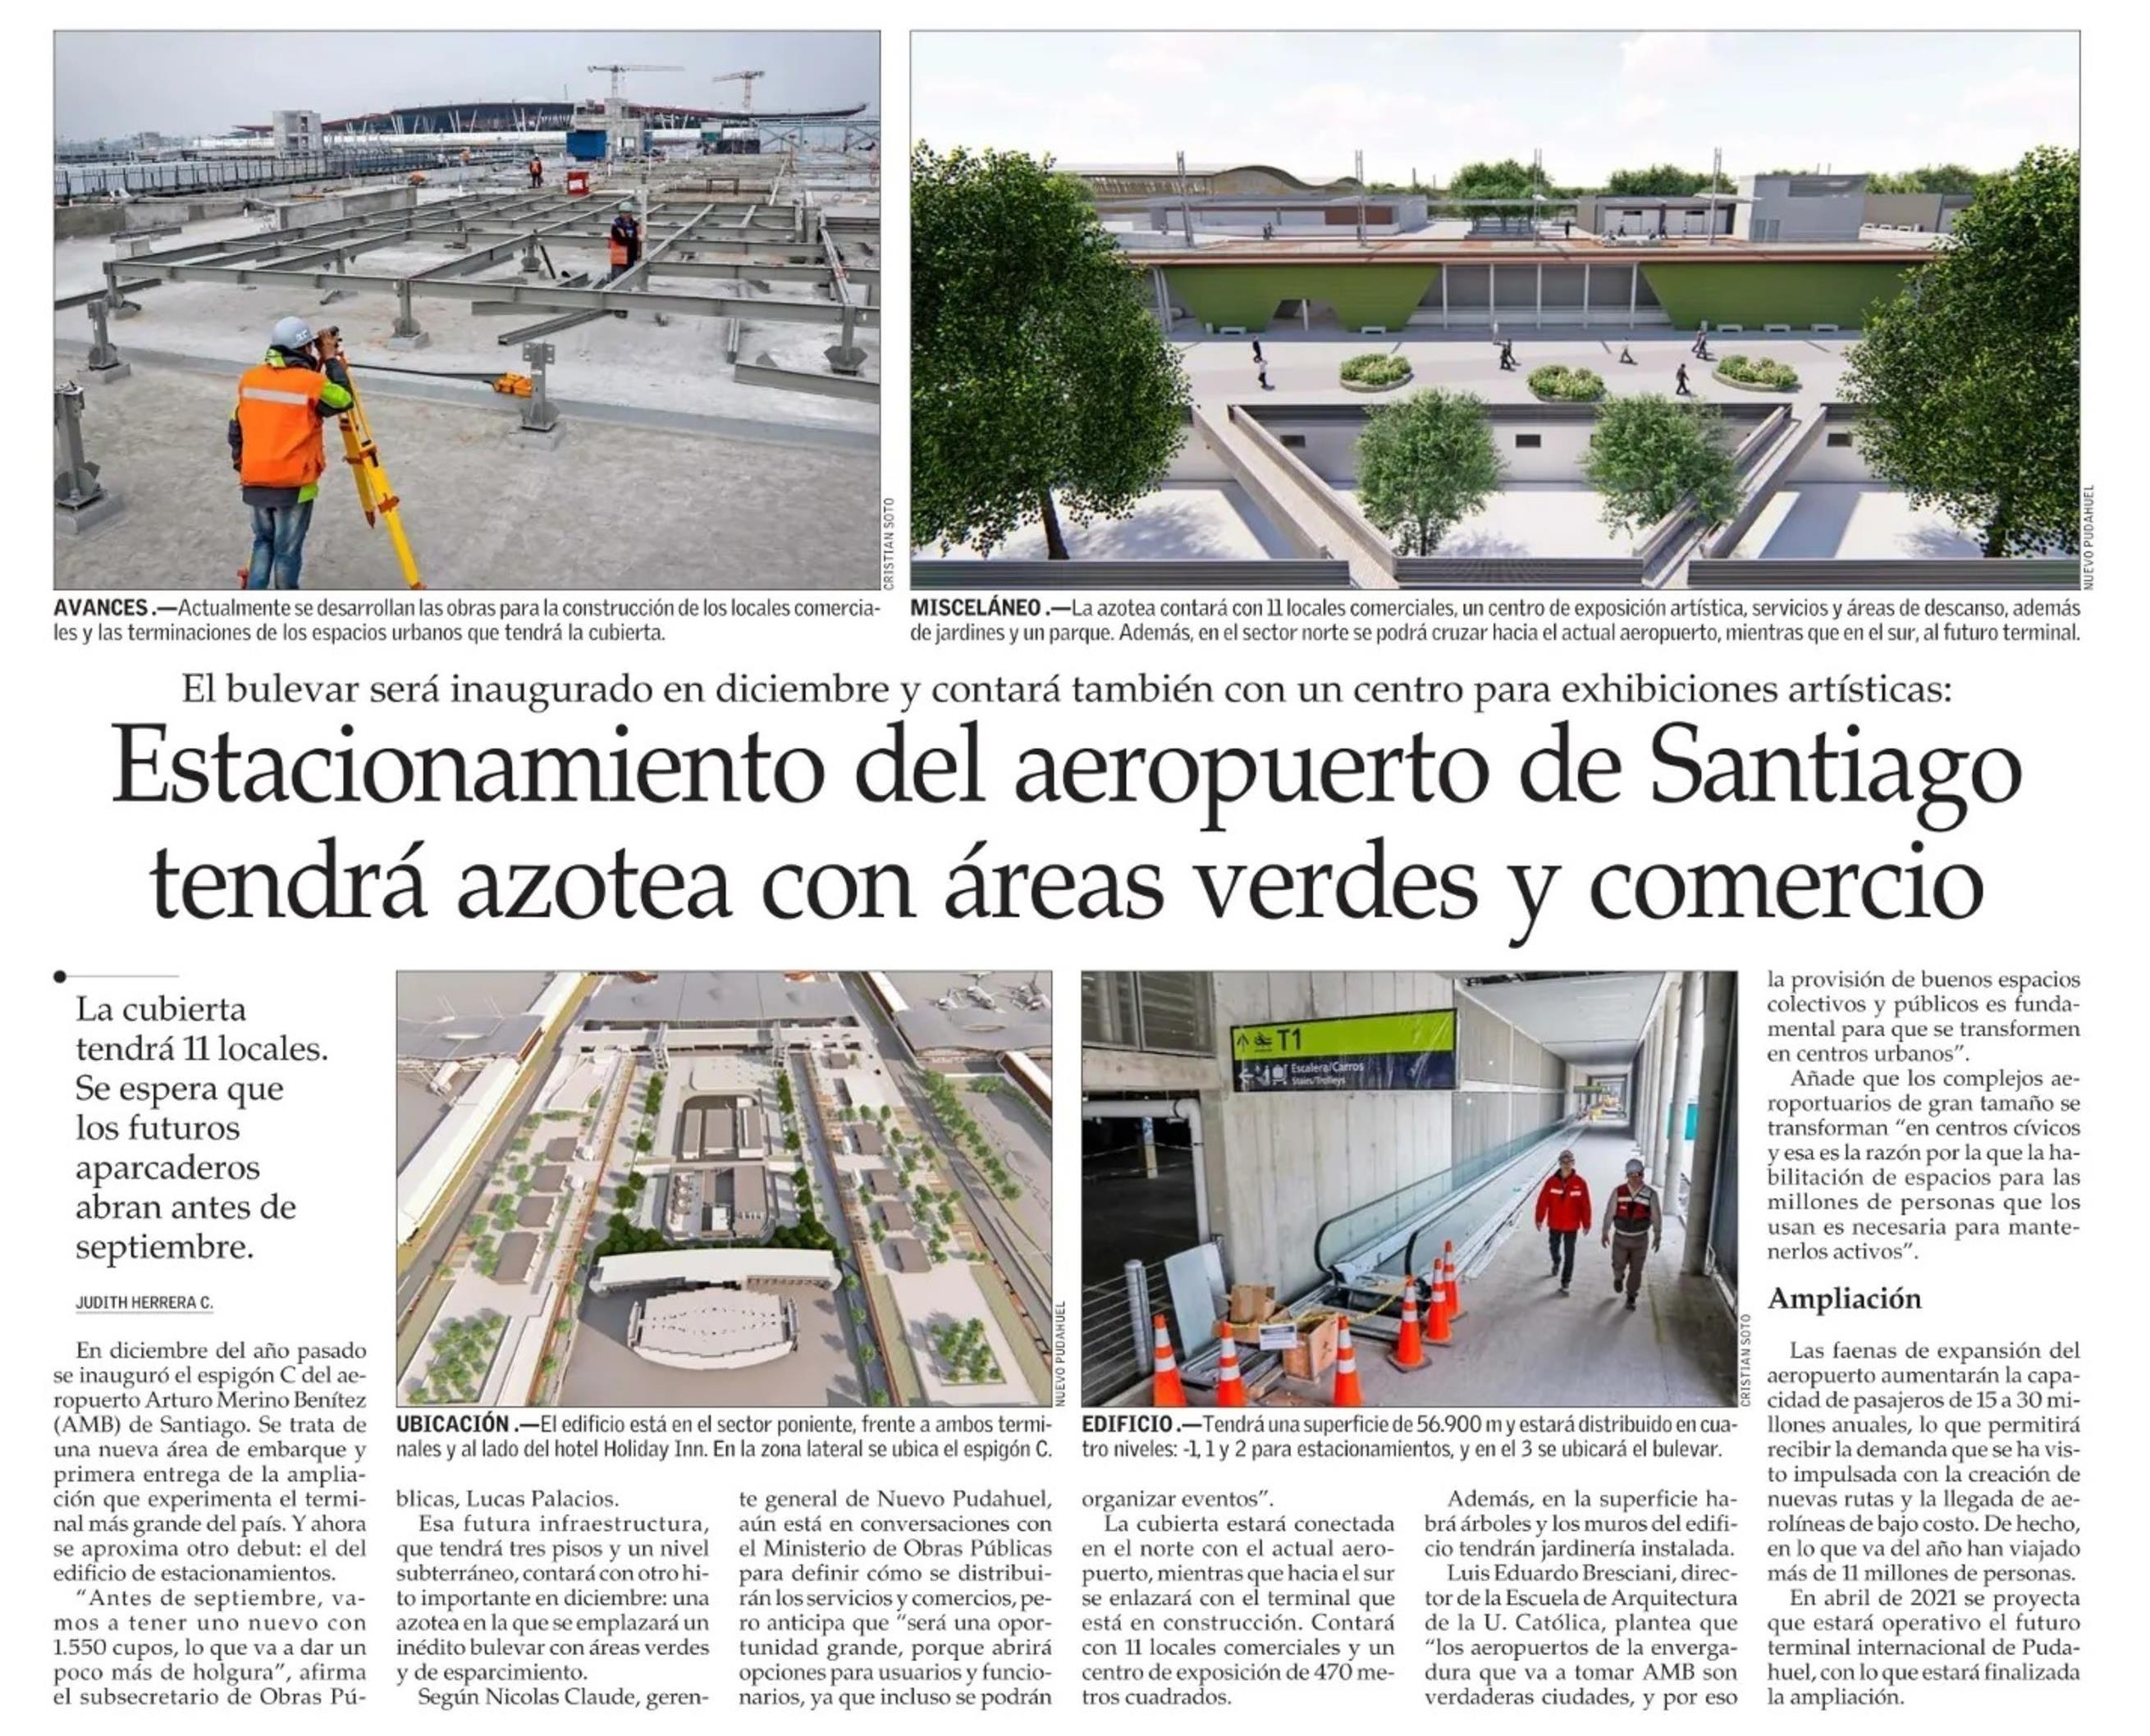 19-07-14_Director_ARQ_UC_habla_sobre_la_construccion_de_espacios_publicos_en_las_nuevas_obras_de_ampliacion_del_aeropuerto_AMB_de_Santiago.jpeg